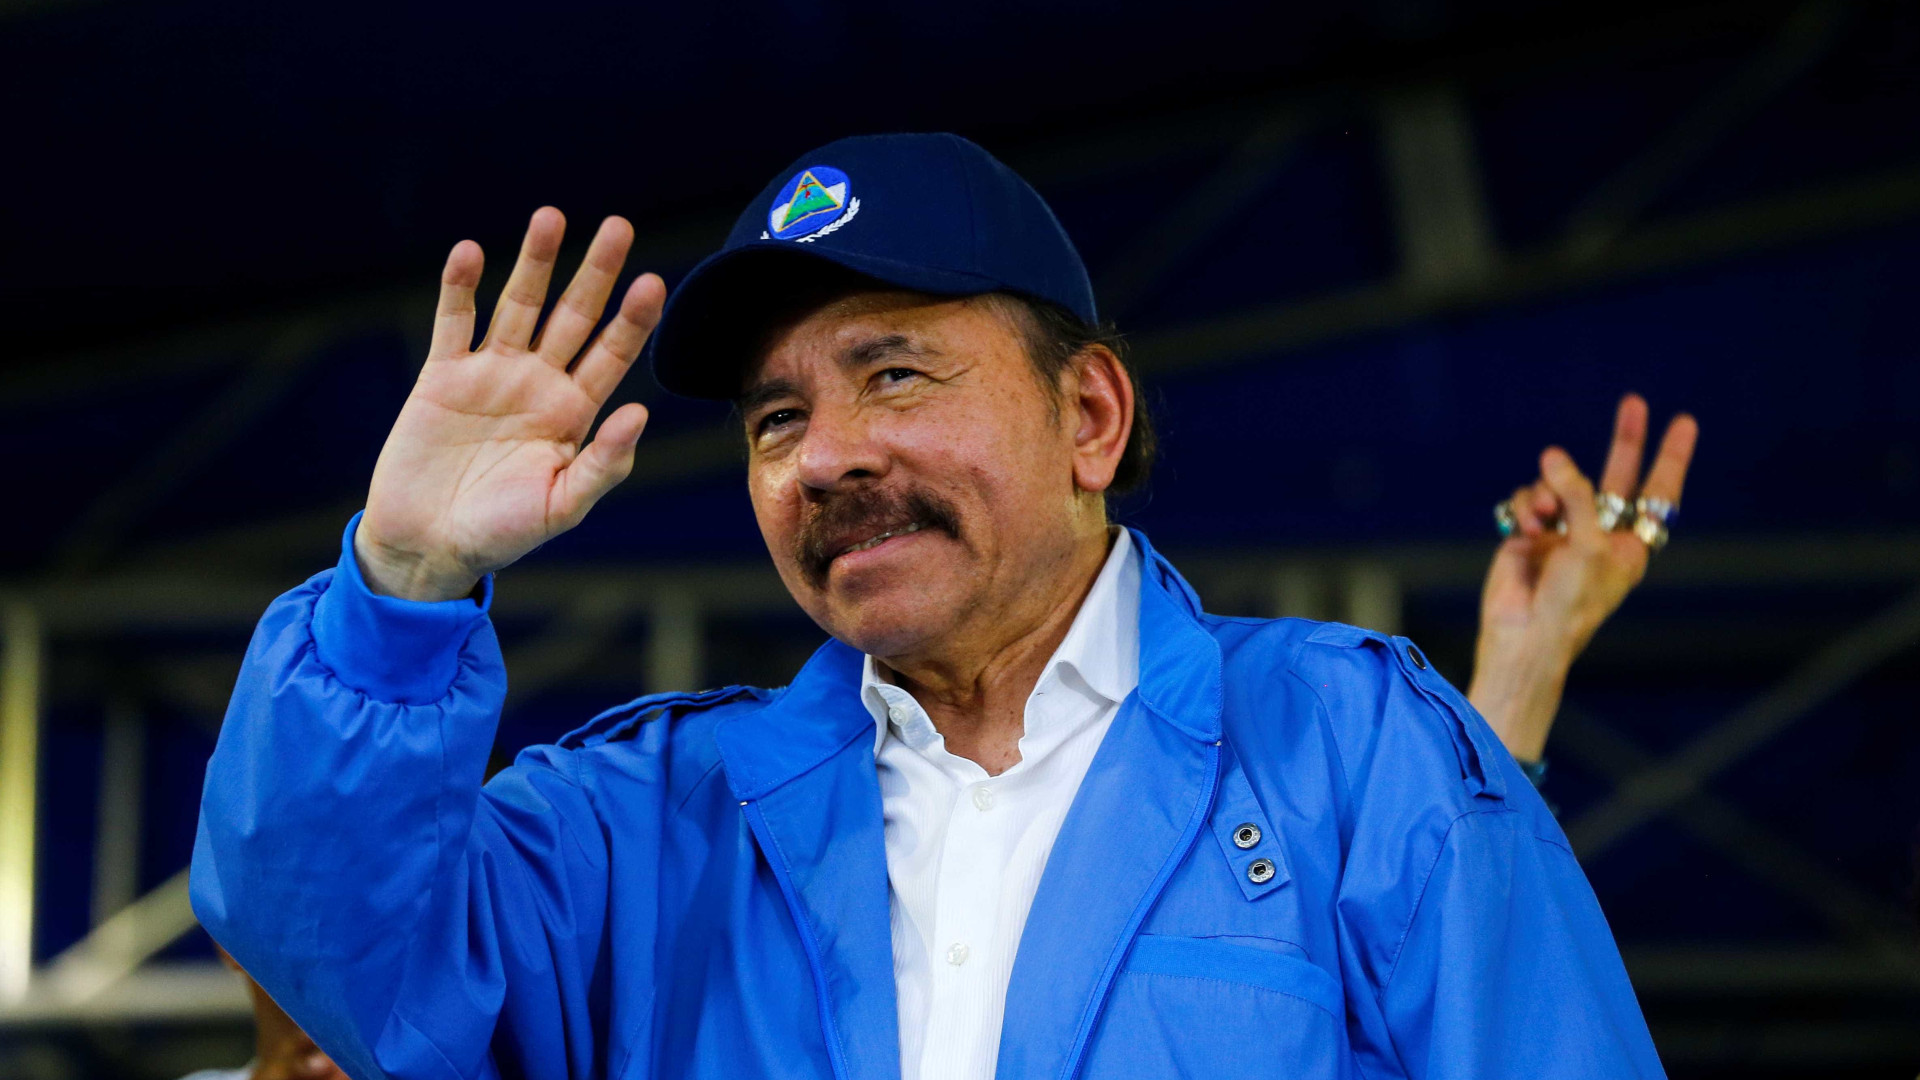 Em discurso, presidente da Nicarágua chama Igreja Católica de golpista